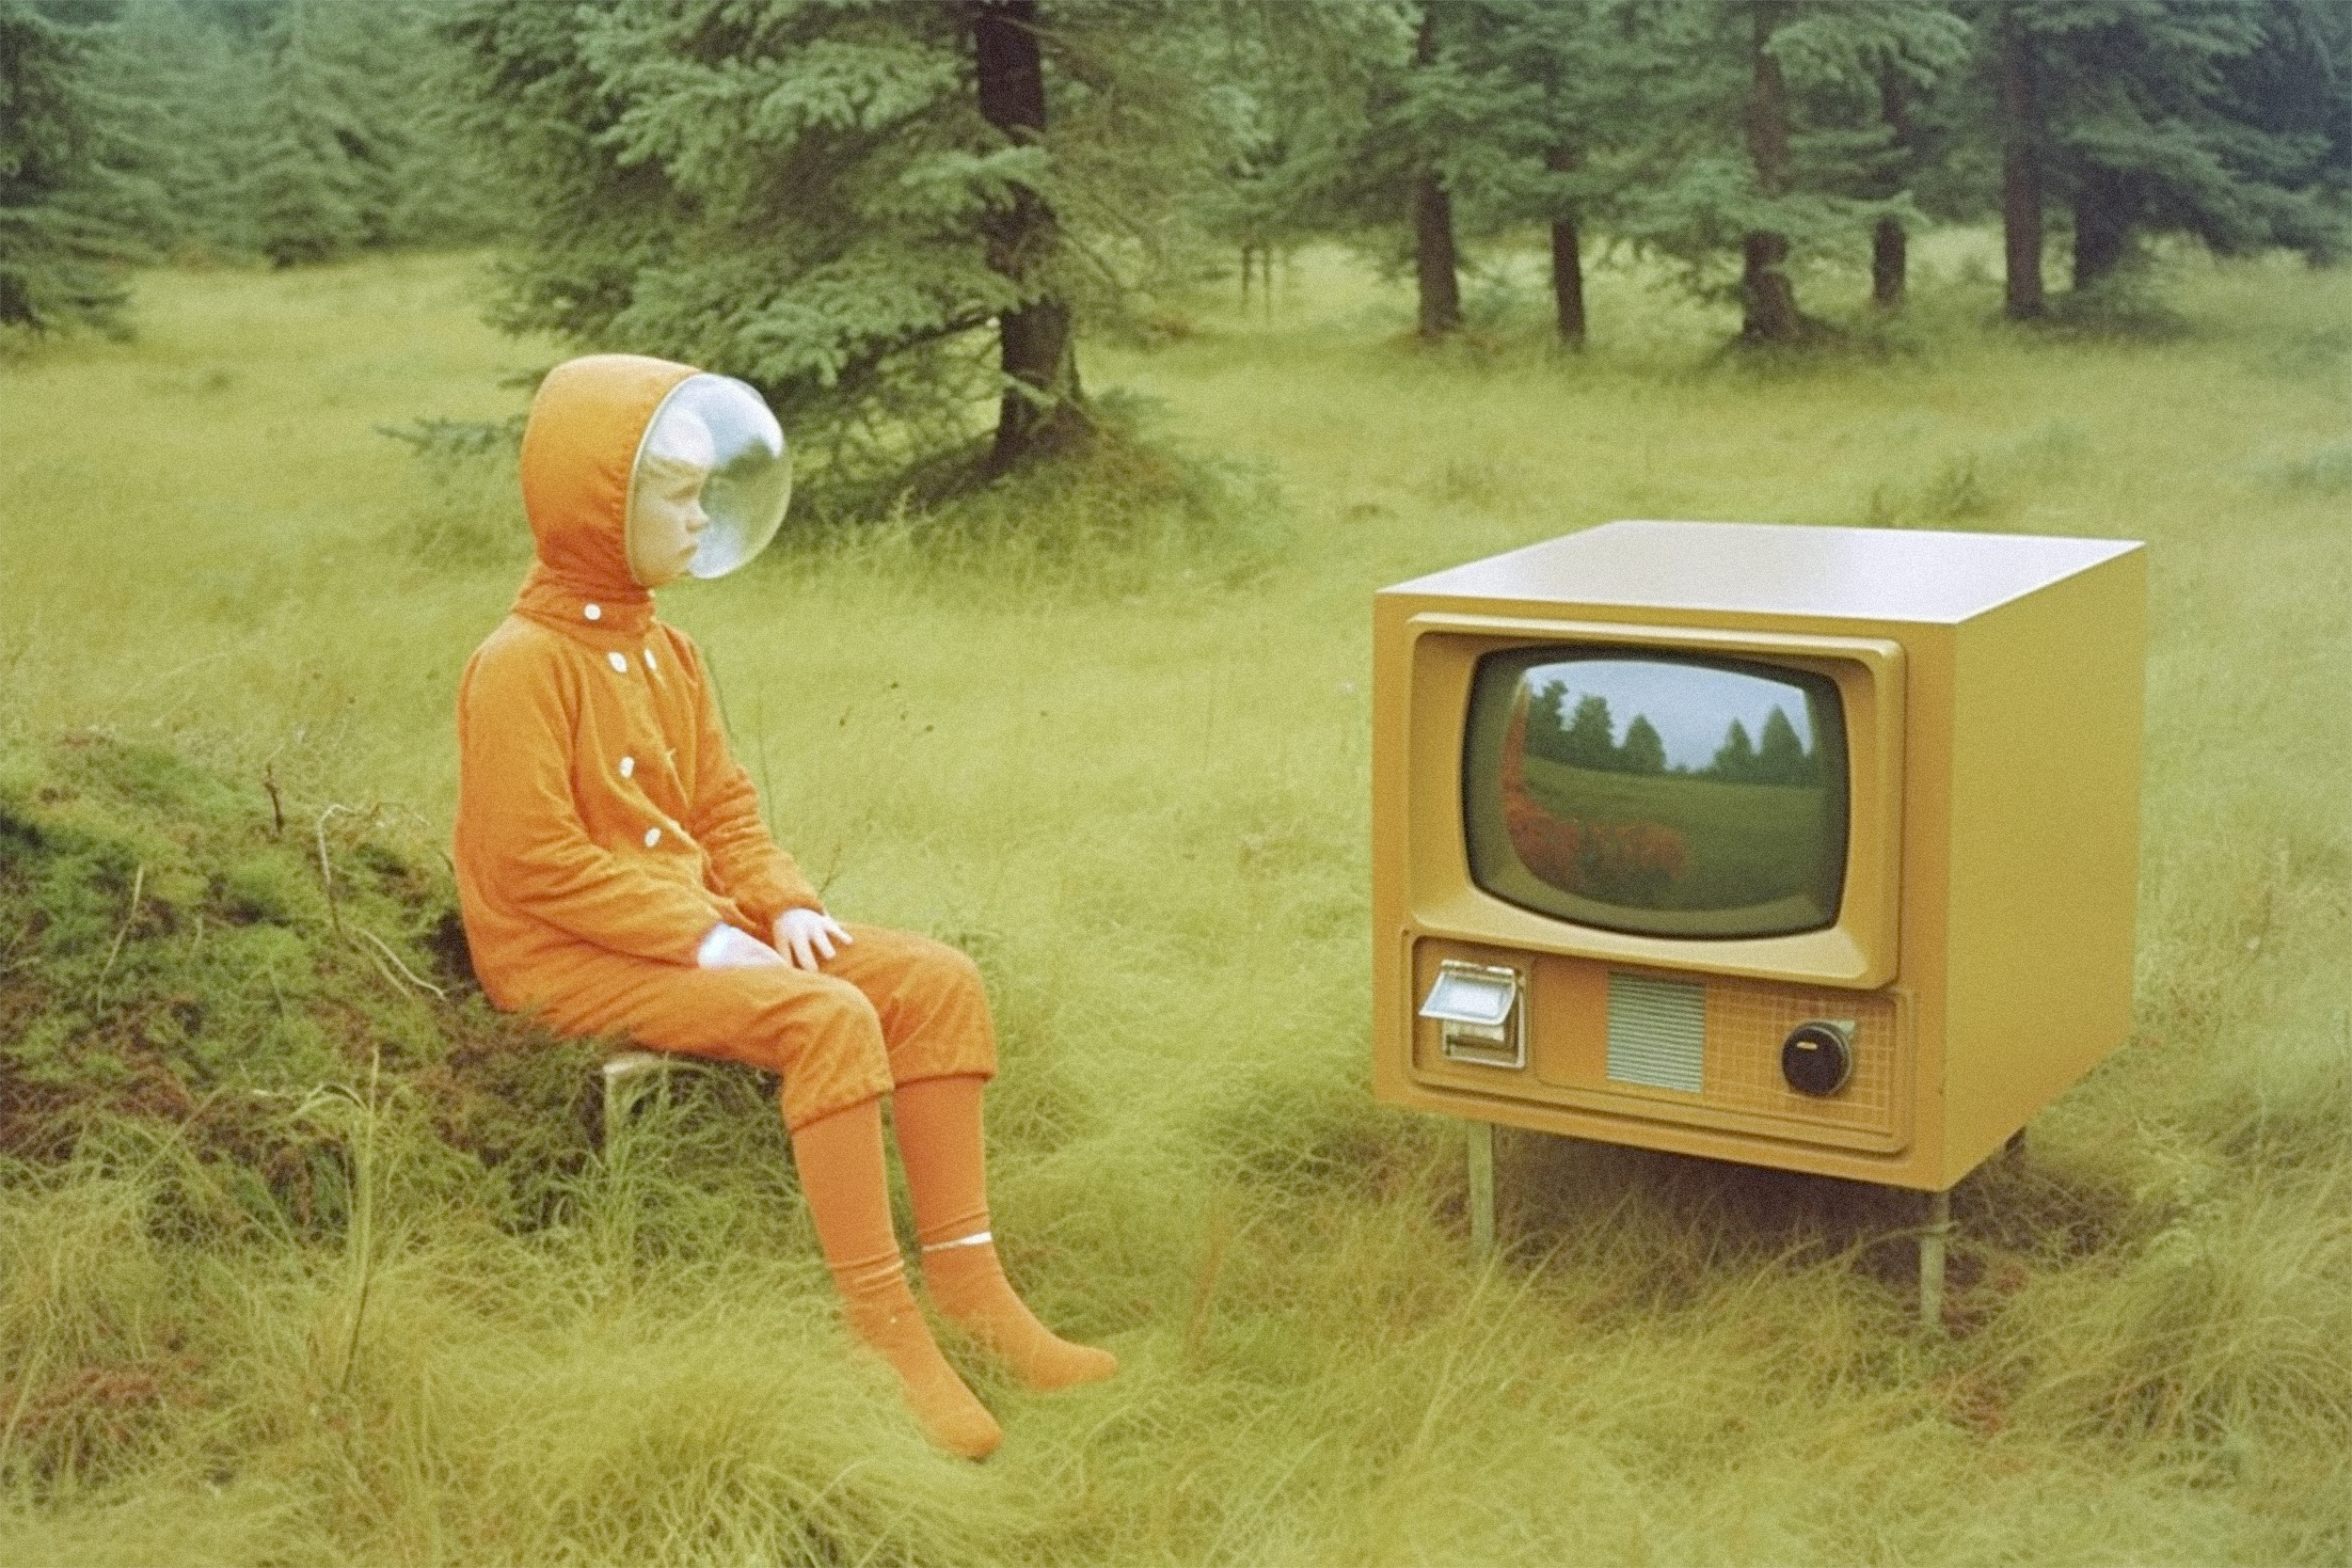 Pojke i en orange rymddräkt sitter ute i naturen och tittar på en äldre tv-apparat.